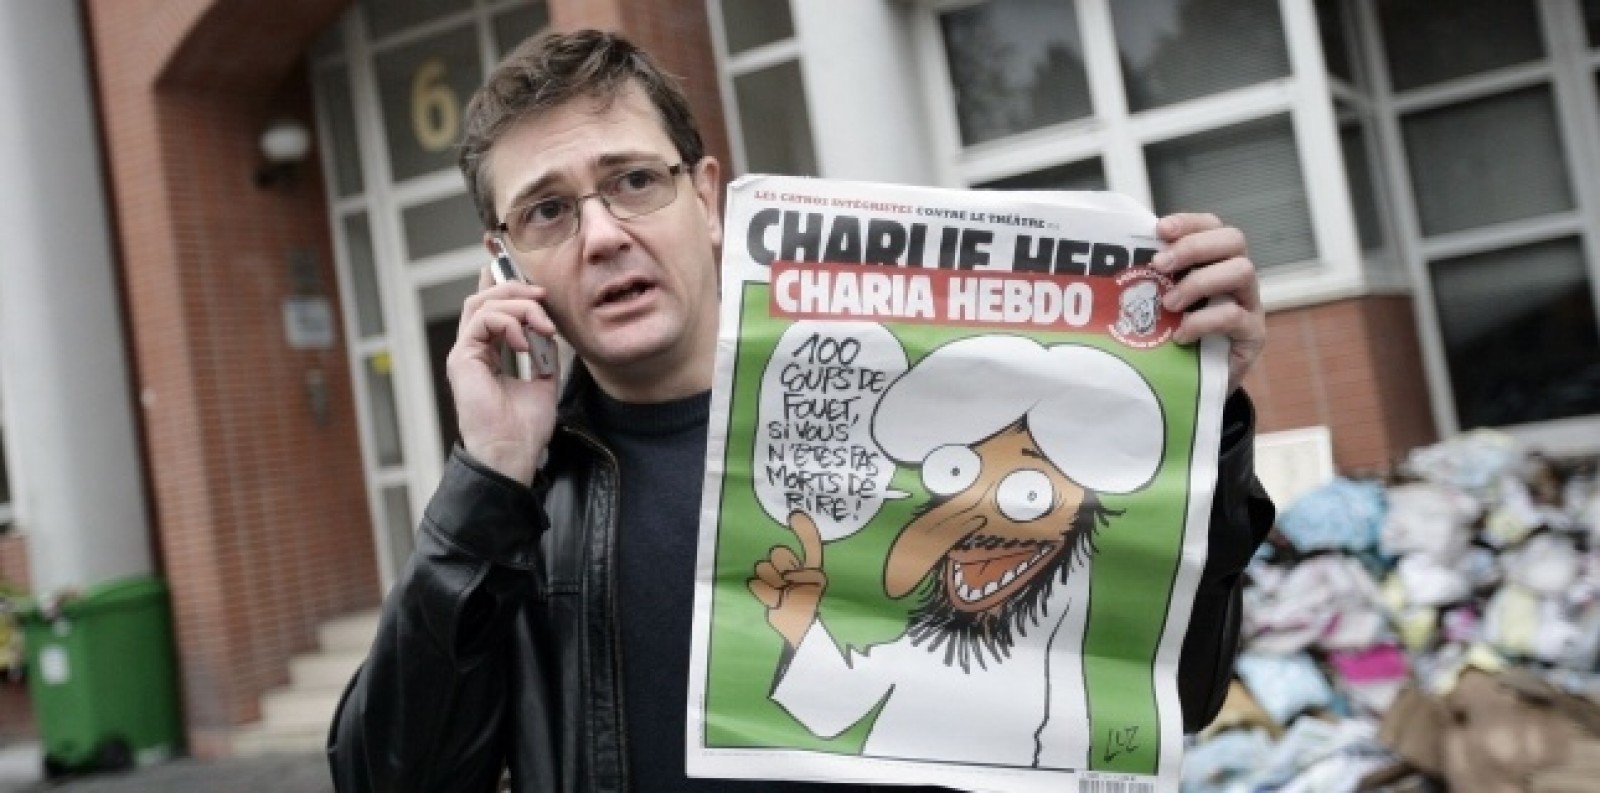  State musulmane boicotează produsele franceze, din cauza caricaturilor cu profetul Mahomed